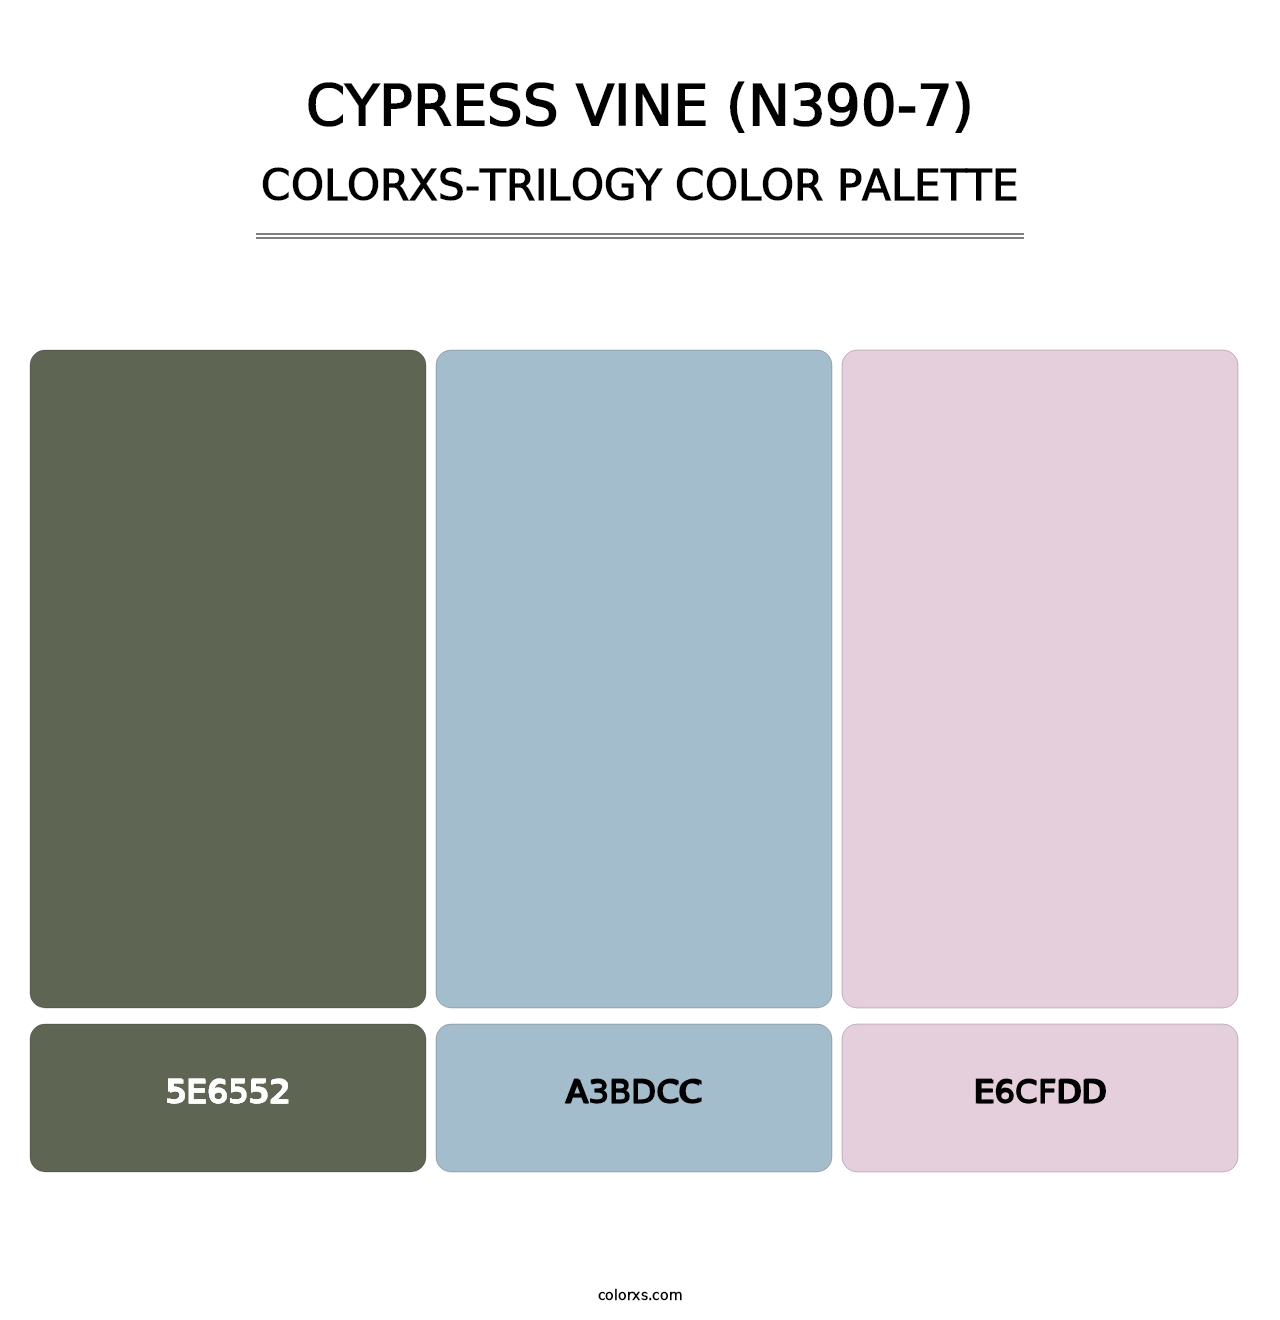 Cypress Vine (N390-7) - Colorxs Trilogy Palette